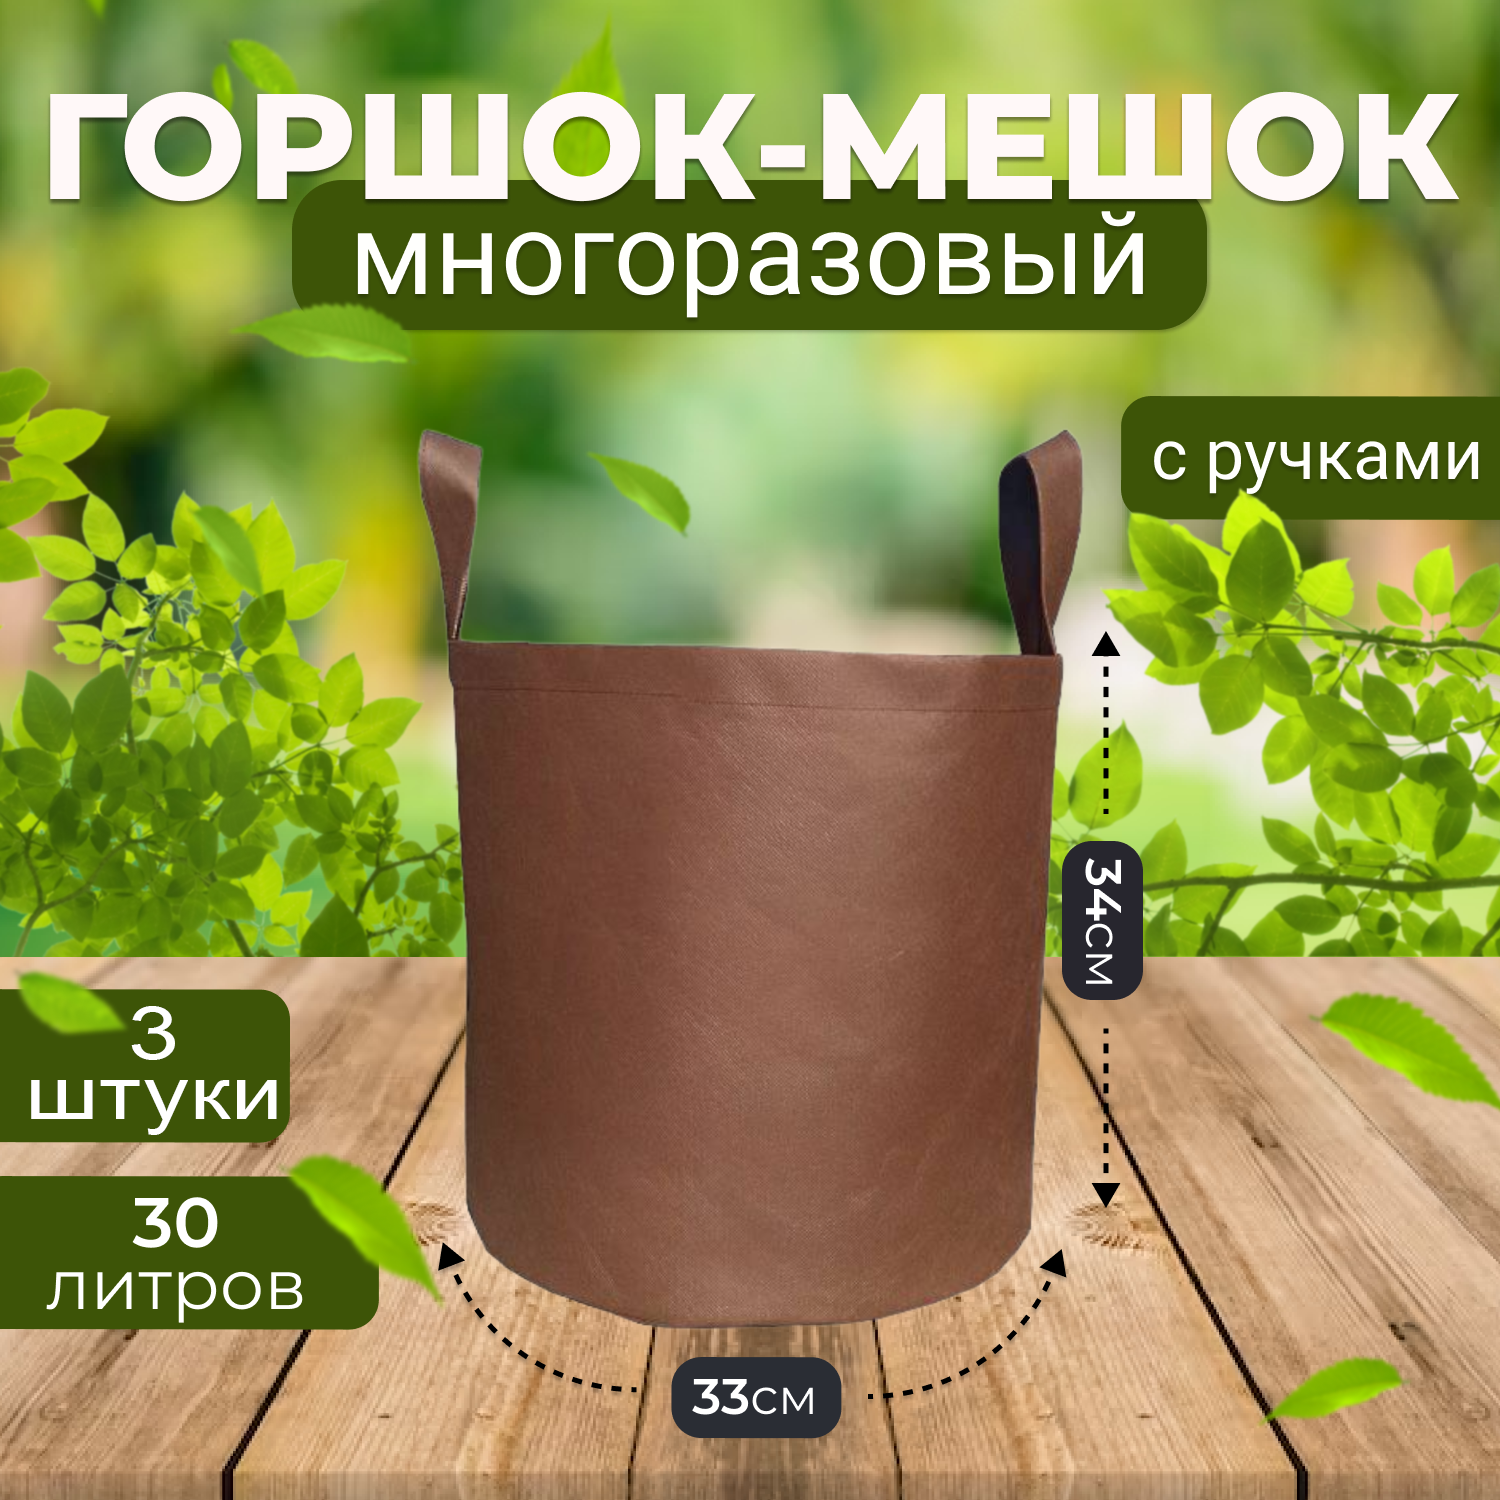 Мешок горшок текстильный из спанбонда Grower Green 30_litrov-Brown_3 30л., 3шт.